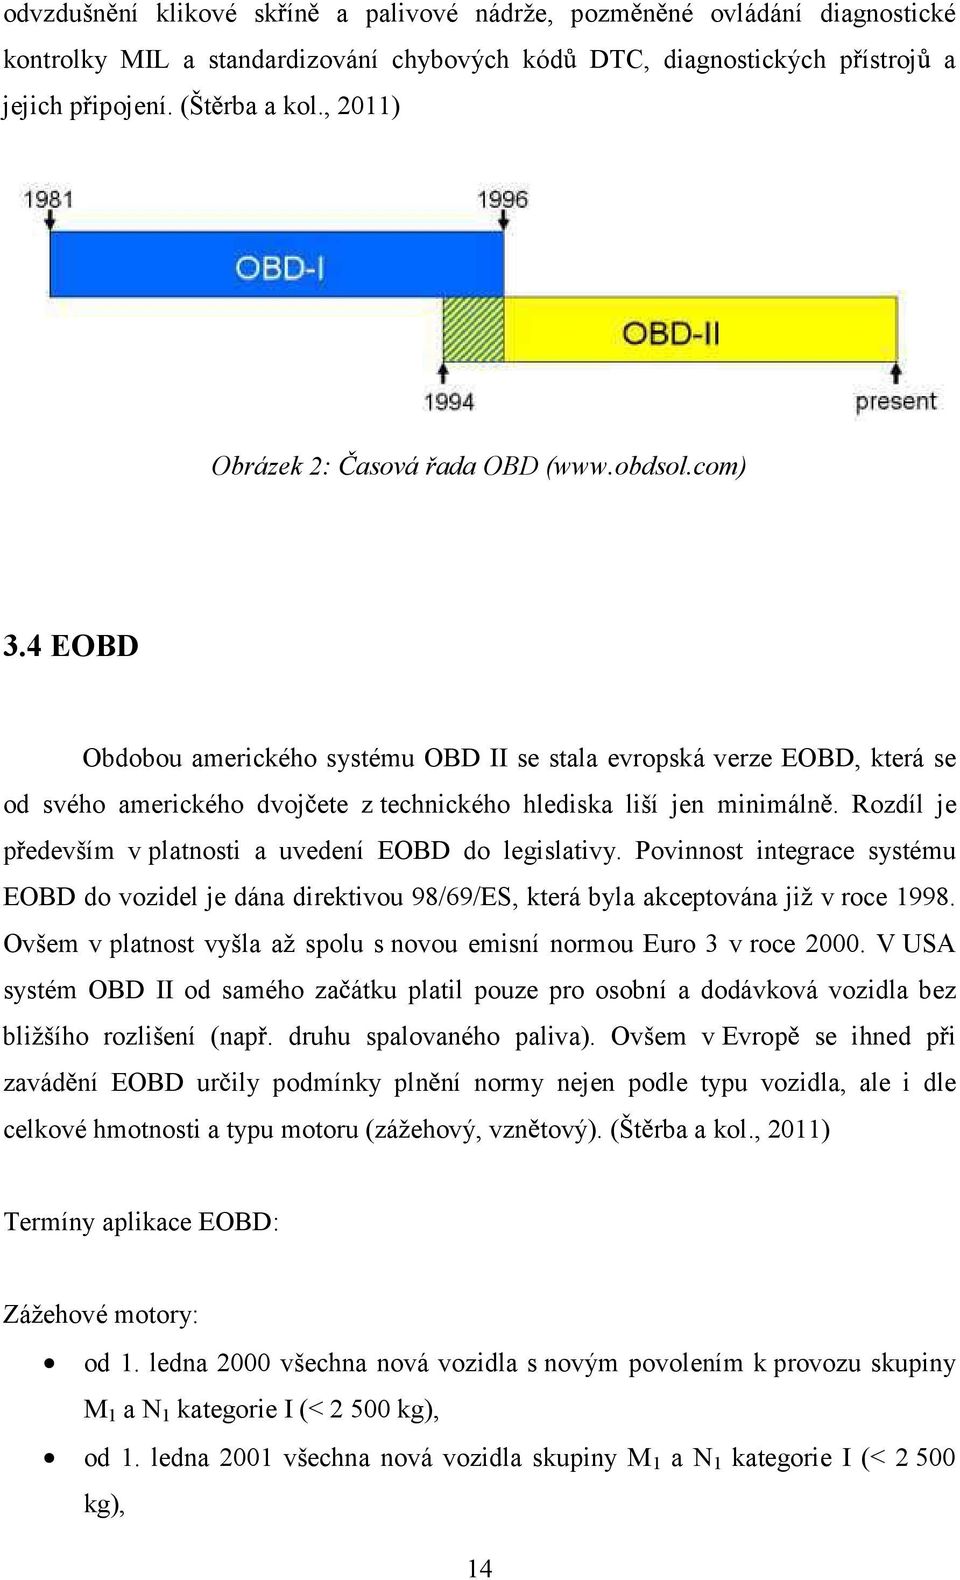 4 EOBD Obdobou amerického systému OBD II se stala evropská verze EOBD, která se od svého amerického dvoj ete z technického hlediska liší jen minimáln.